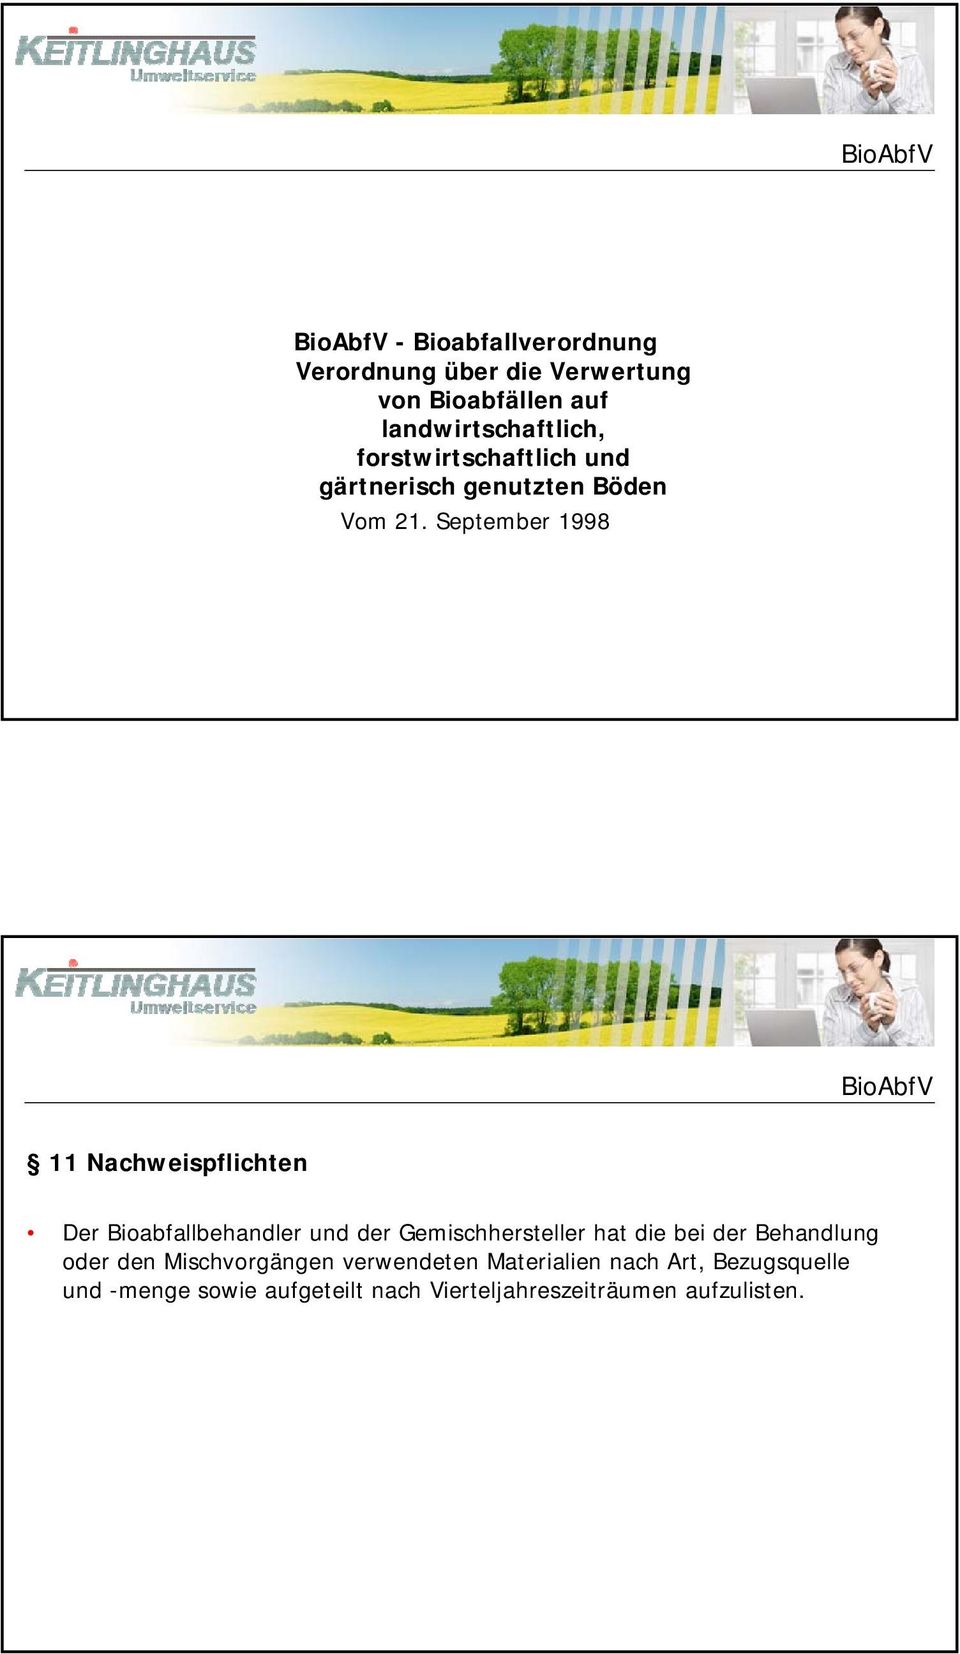 September 1998 BioAbfV 11 Nachweispflichten Der Bioabfallbehandler und der Gemischhersteller hat die bei